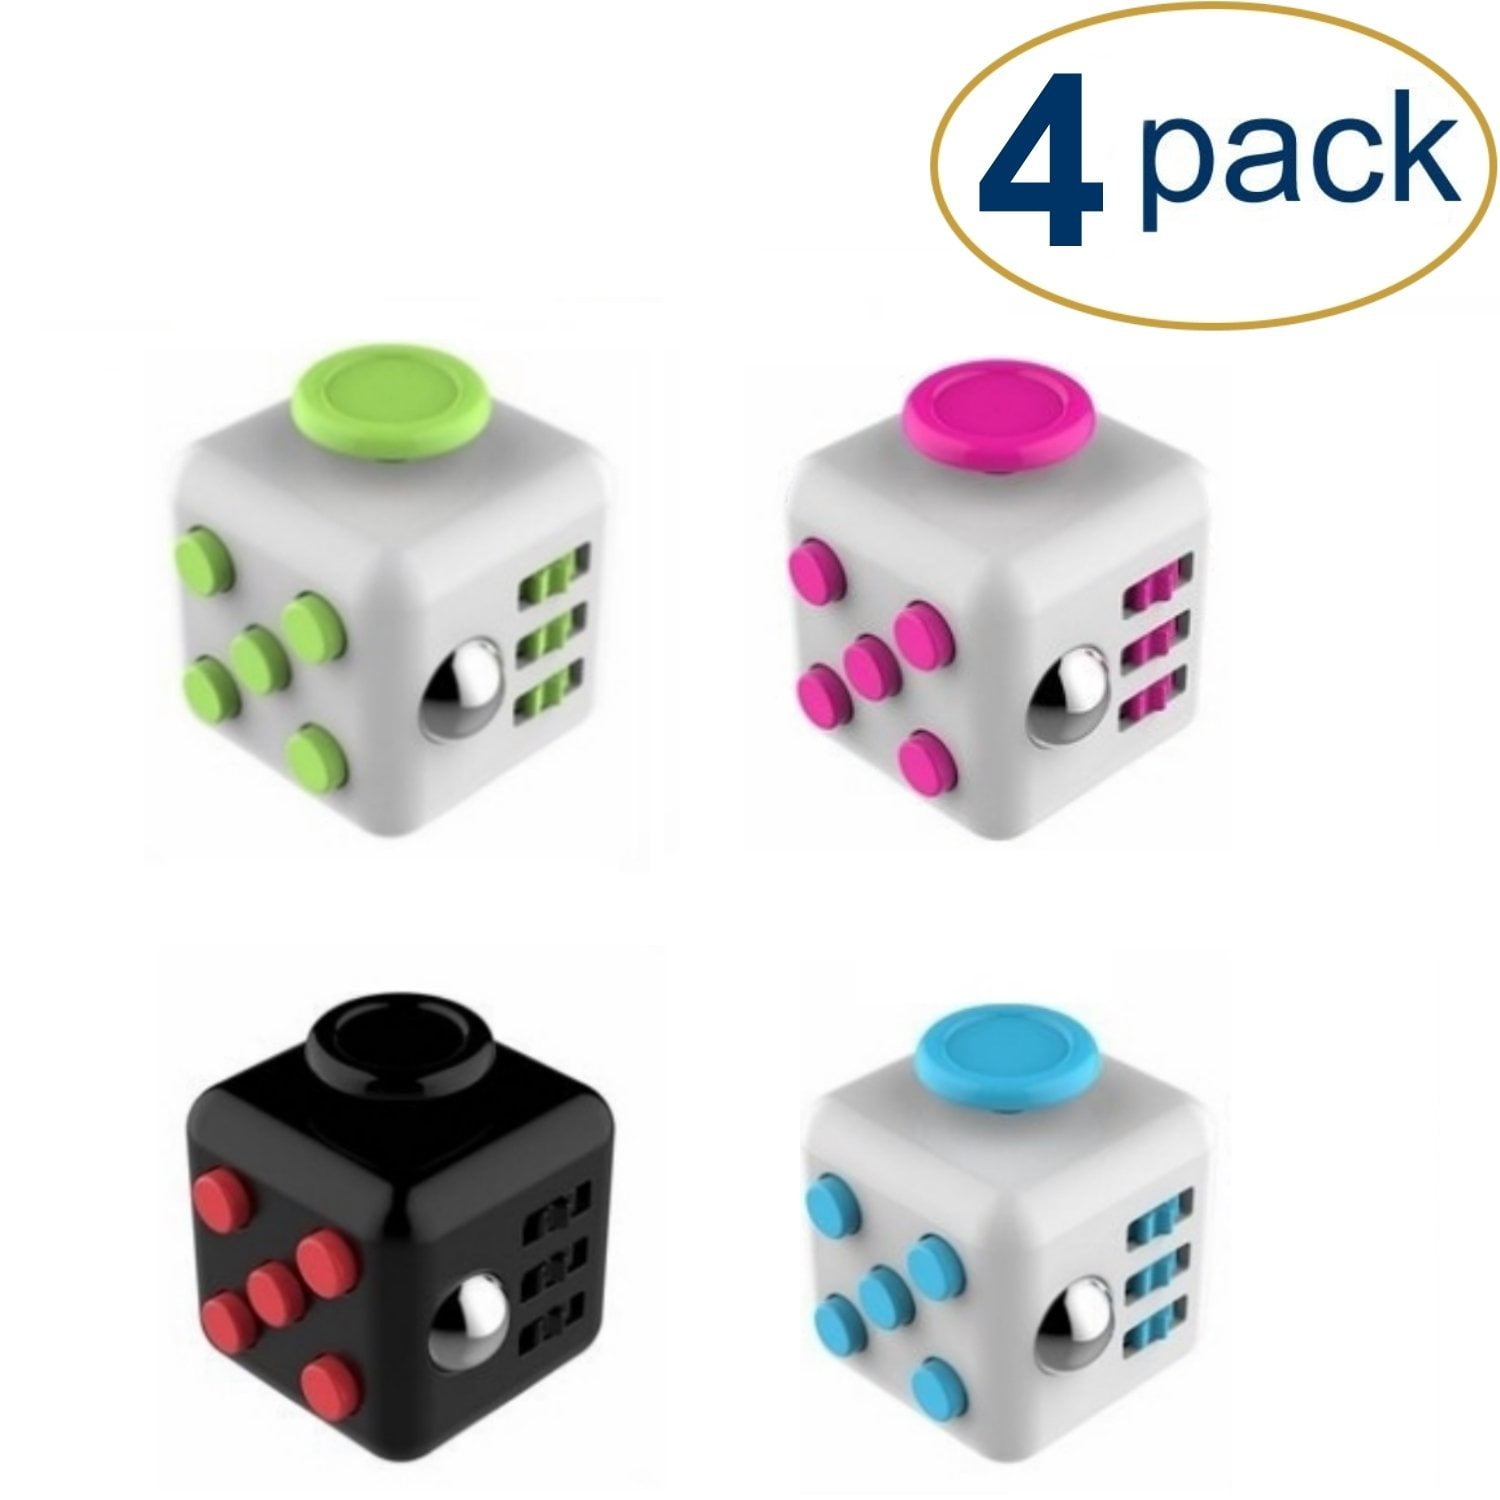 Details about   Figit Fidget Cube Box Fiddle Toys Figet Dice Stress Cubes Adult Kids Gadget NEW 